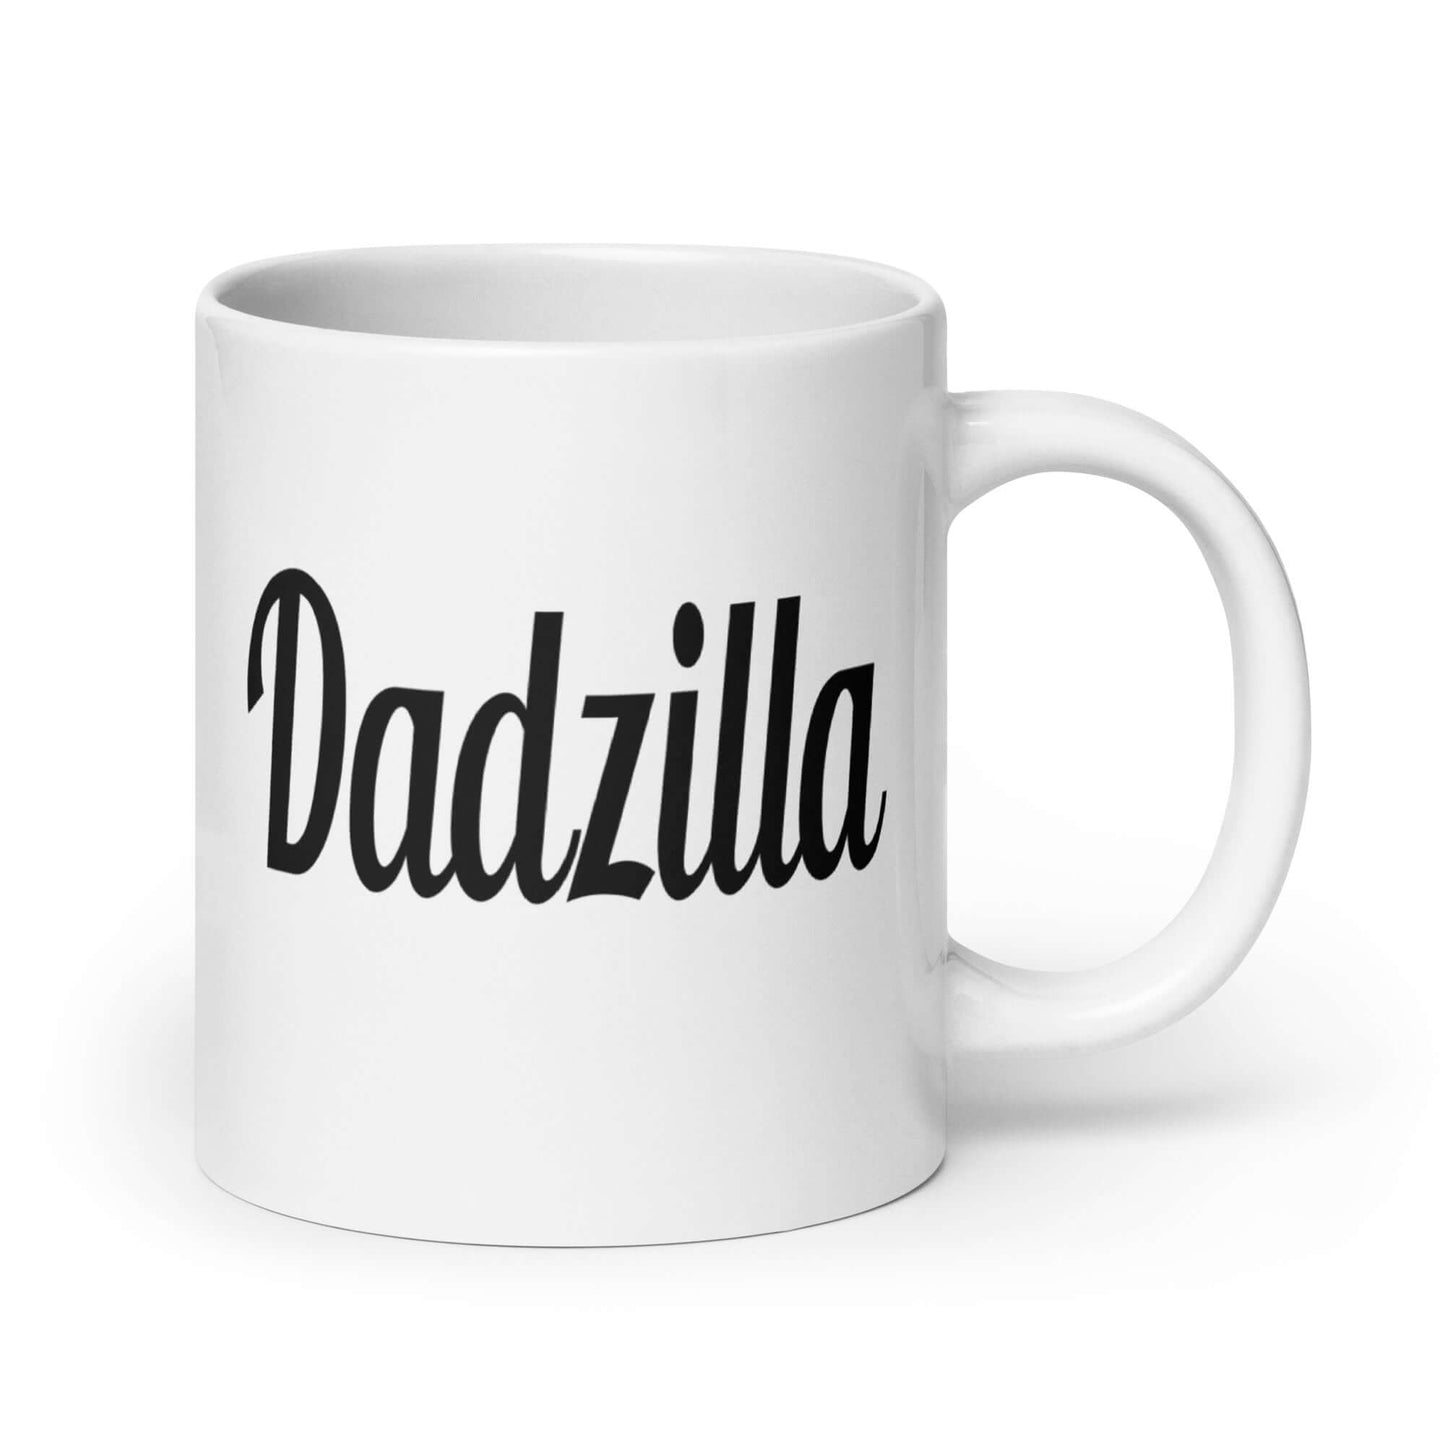 Dadzilla funny mug for dad